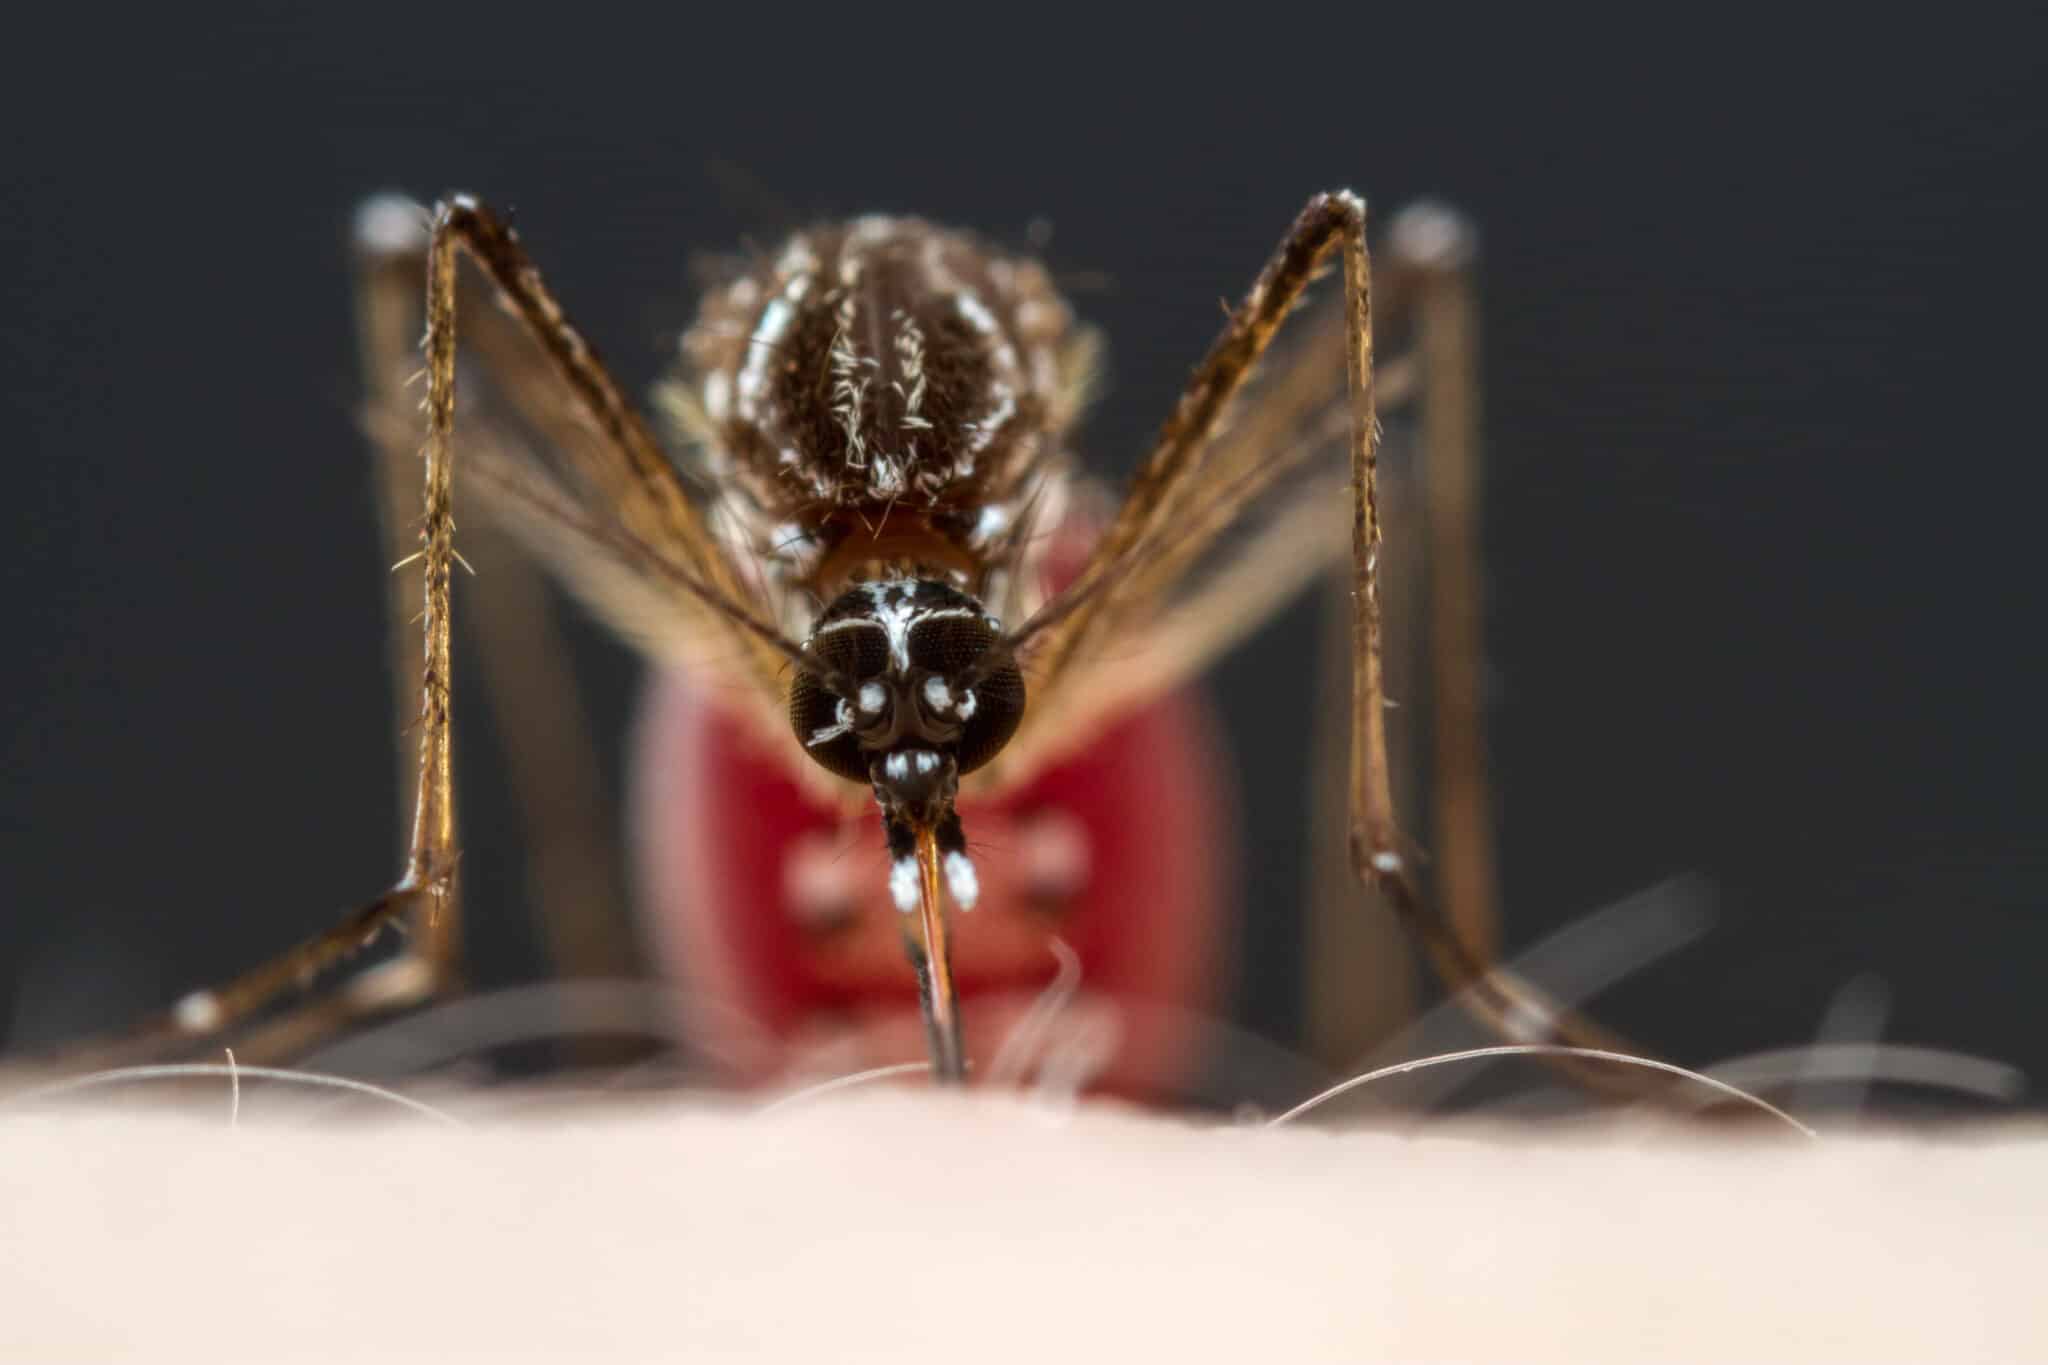 La atraccion inquebrantable de los mosquitos hacia los humanos scaled